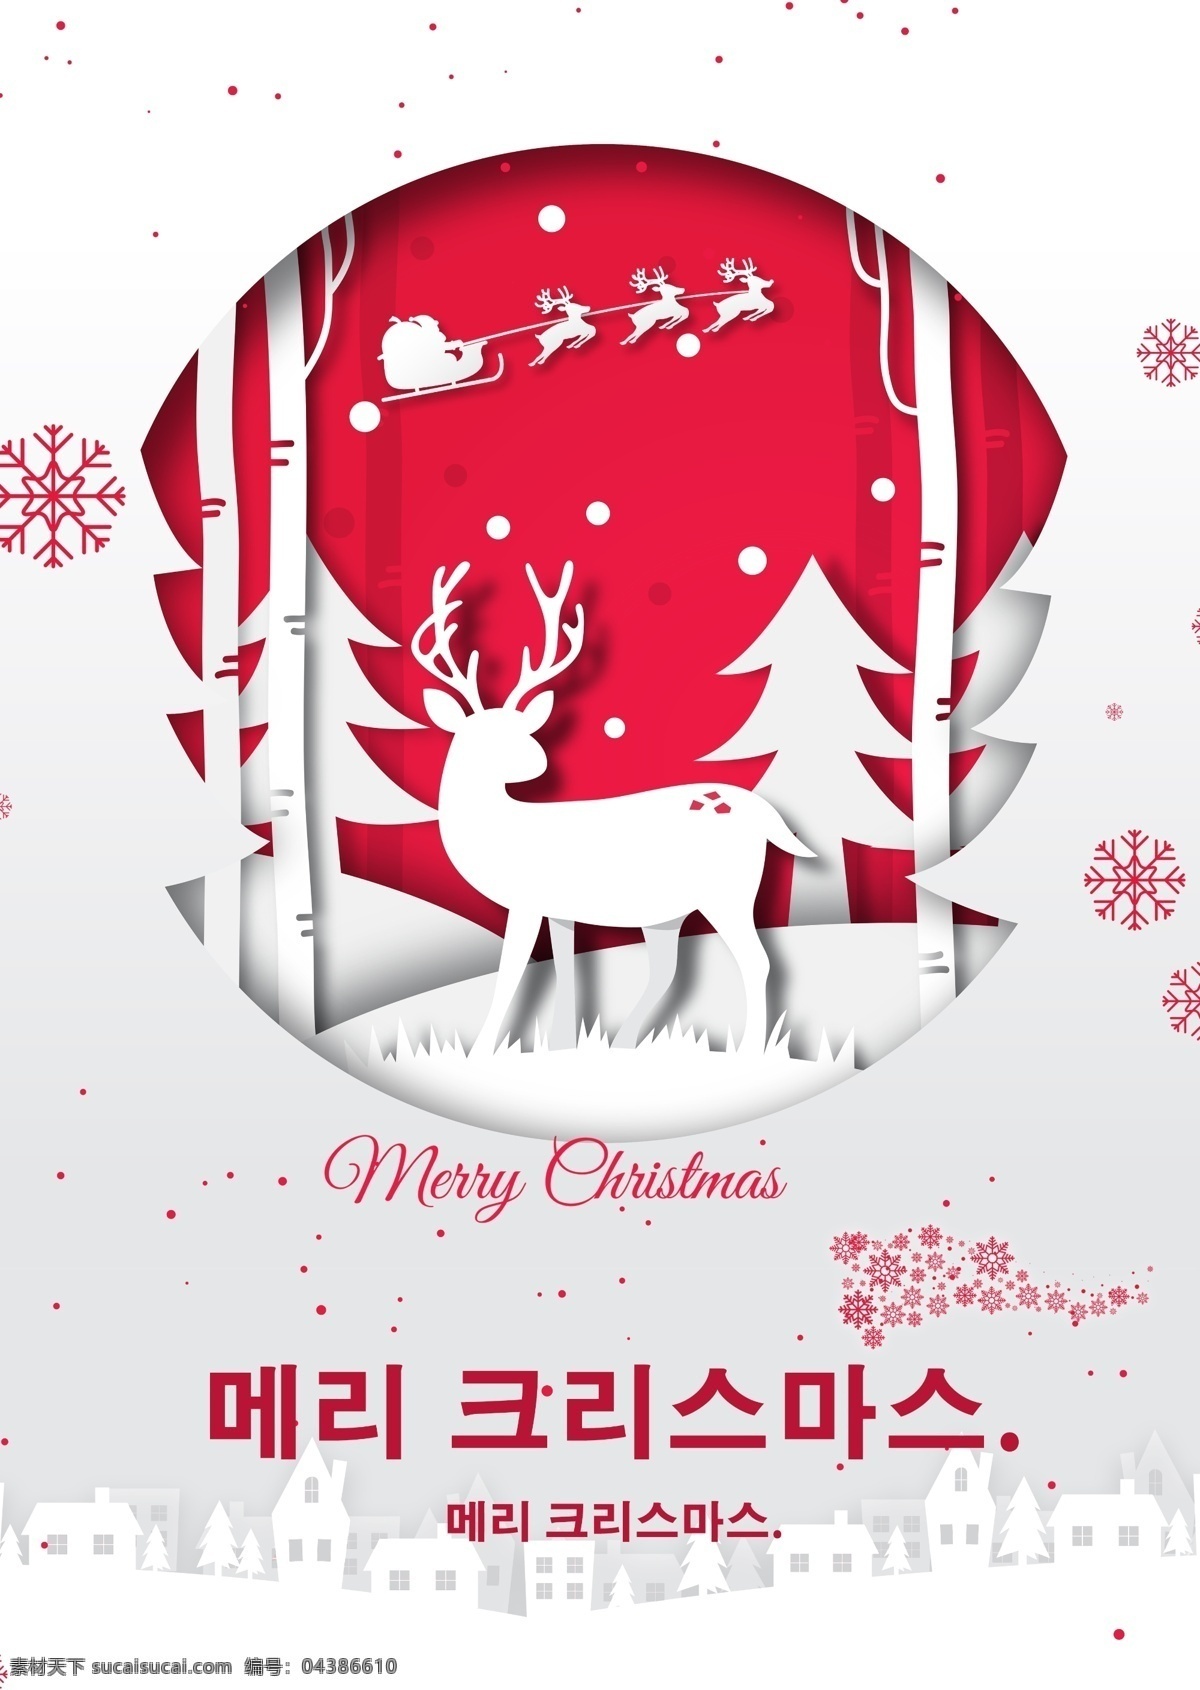 背光 手 圣诞节 海报 形式 简单 雪 冰雪 谢和 贴纸 冰盖 传统节日 这篇论文 圣诞 圣诞树 韩国 移动支付